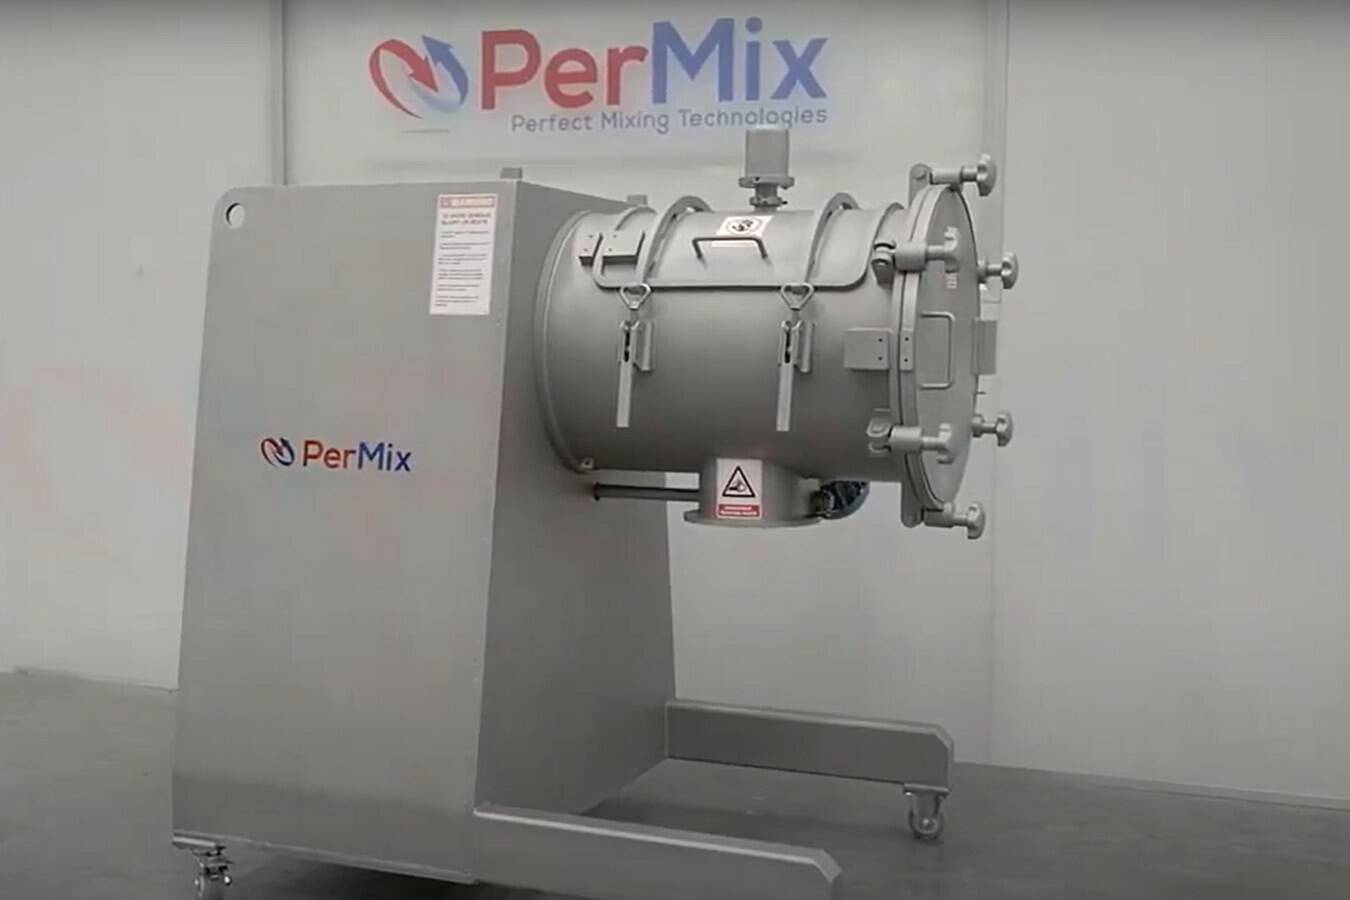 PerMix Hybrid Paddel- und Pflugscharmischer, ein 2-in-1-Kraftpaket PerMix Hybrid ist ein Paddelmischer und Pflugmischer in einem Gerät.  Mit ihm können Sie mühelos zwischen Paddel- und Pflugmischer wechseln.  Dies ermöglicht die ultimative Vielfalt.